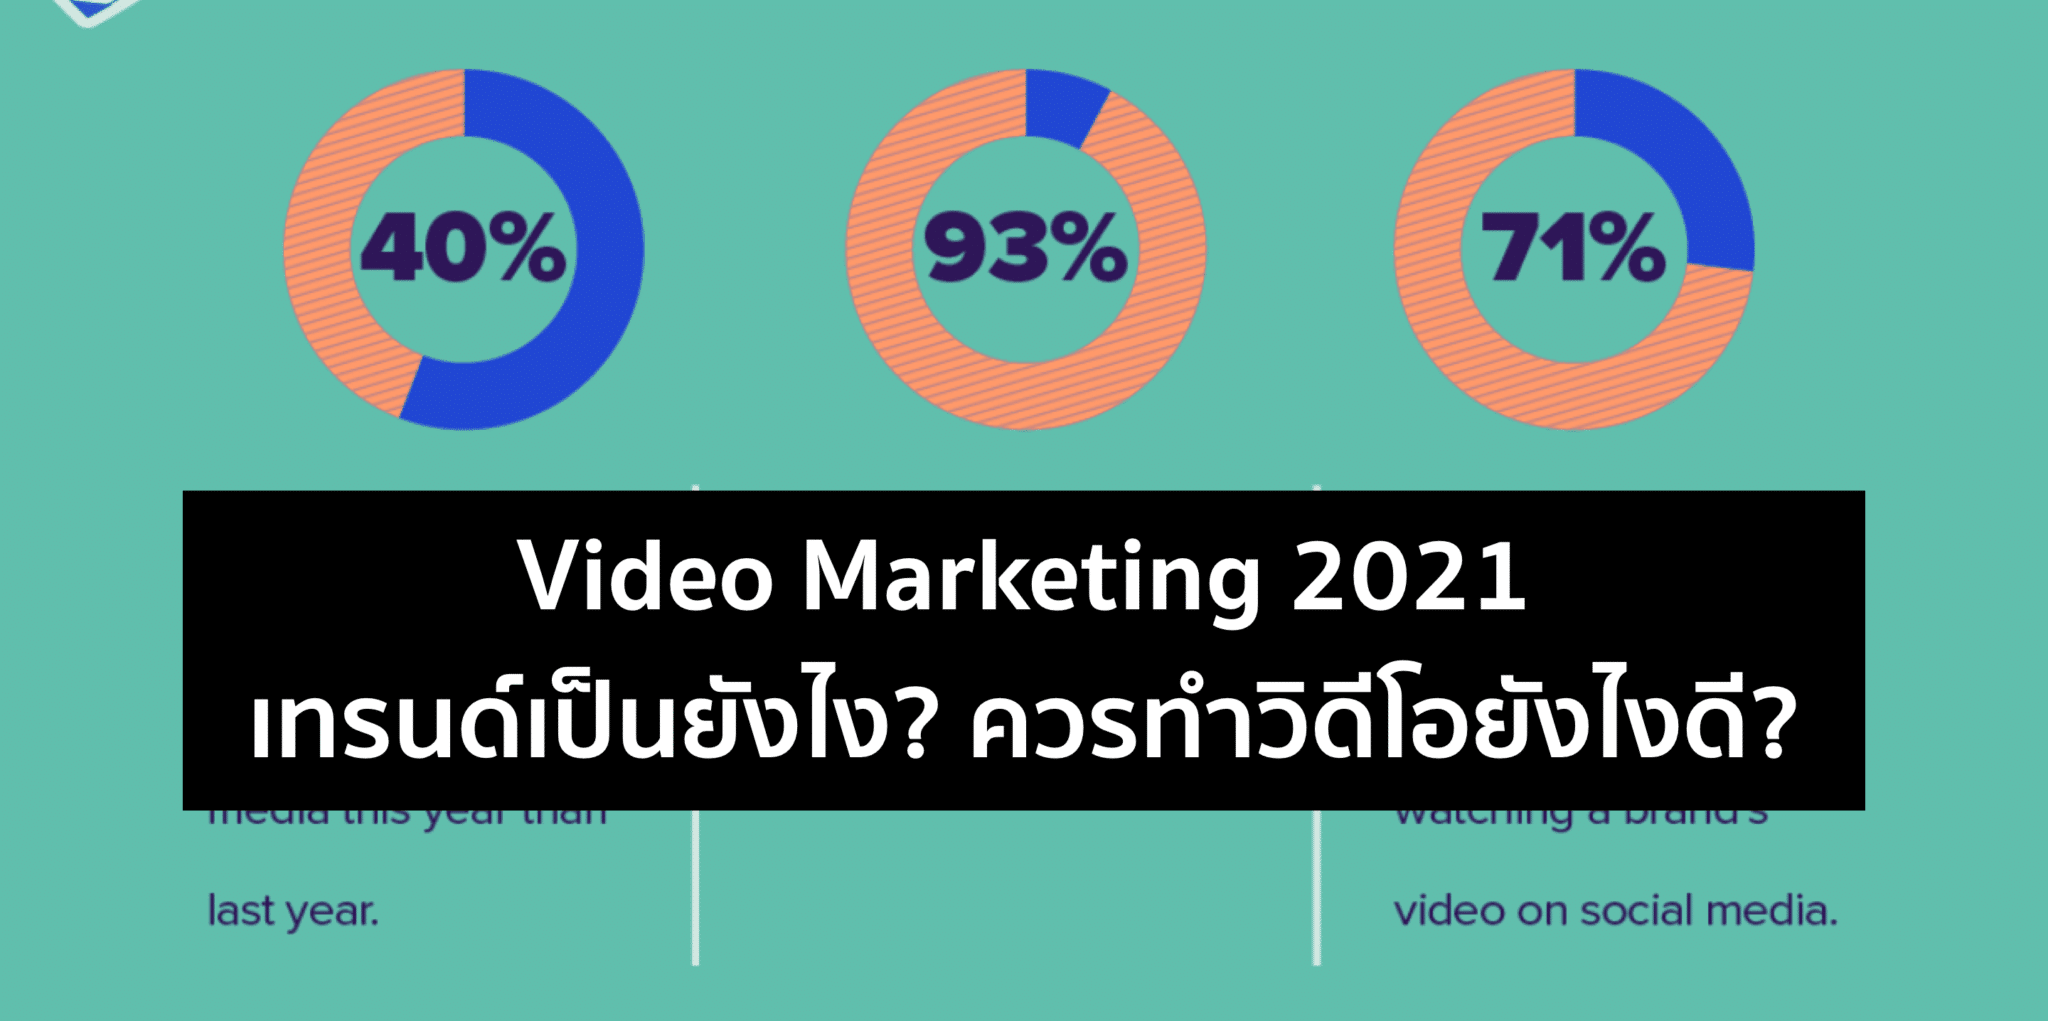 Video Marketing 2021 – มีอิทธิผลอย่างไรกับผู้บริโภคในวันนี้